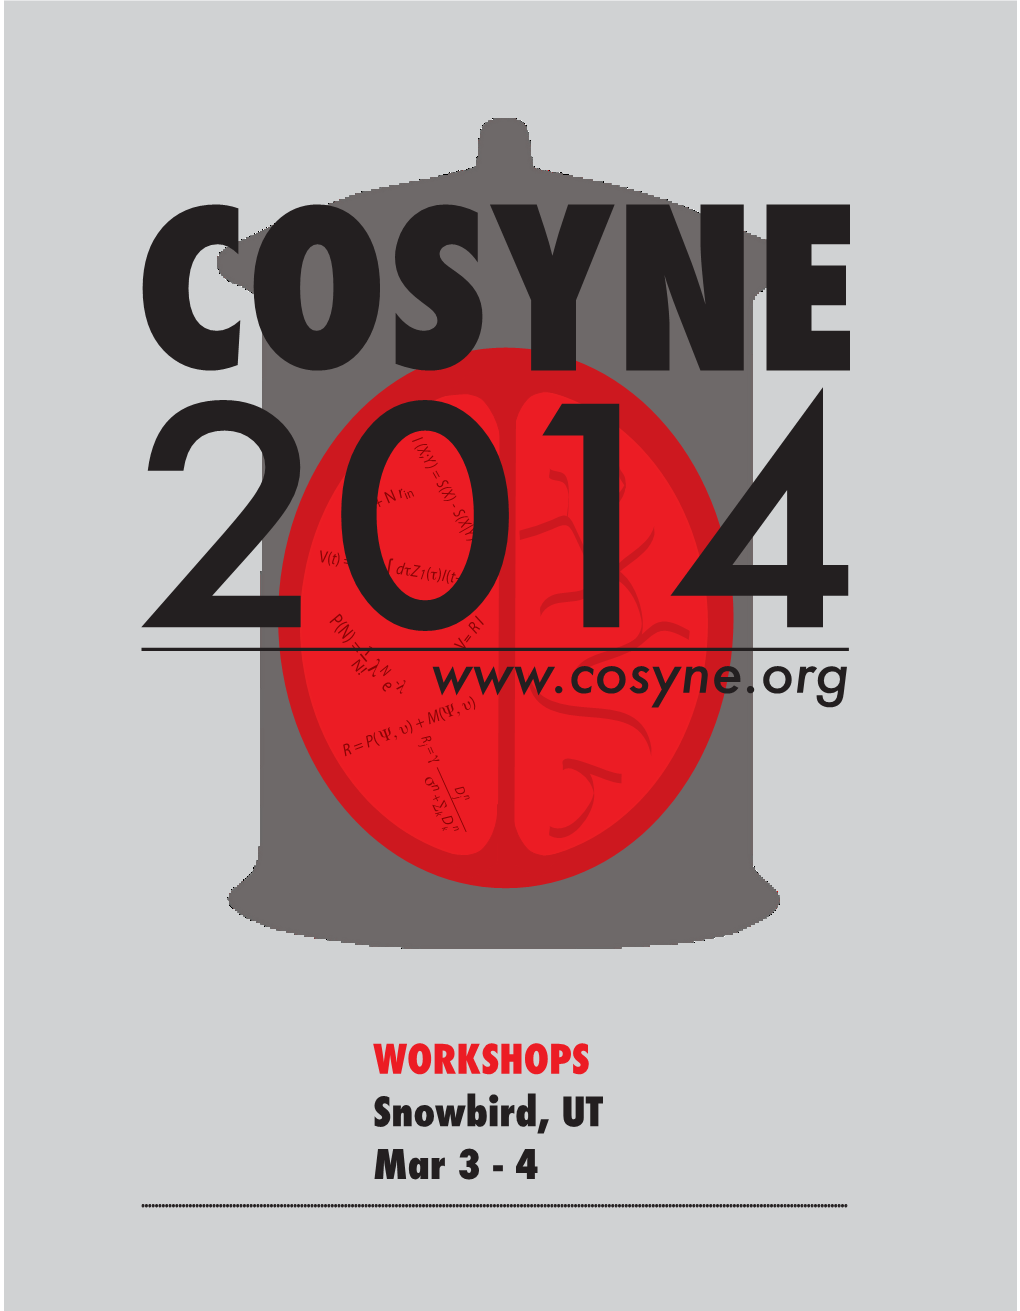 COSYNE 2014 Workshops